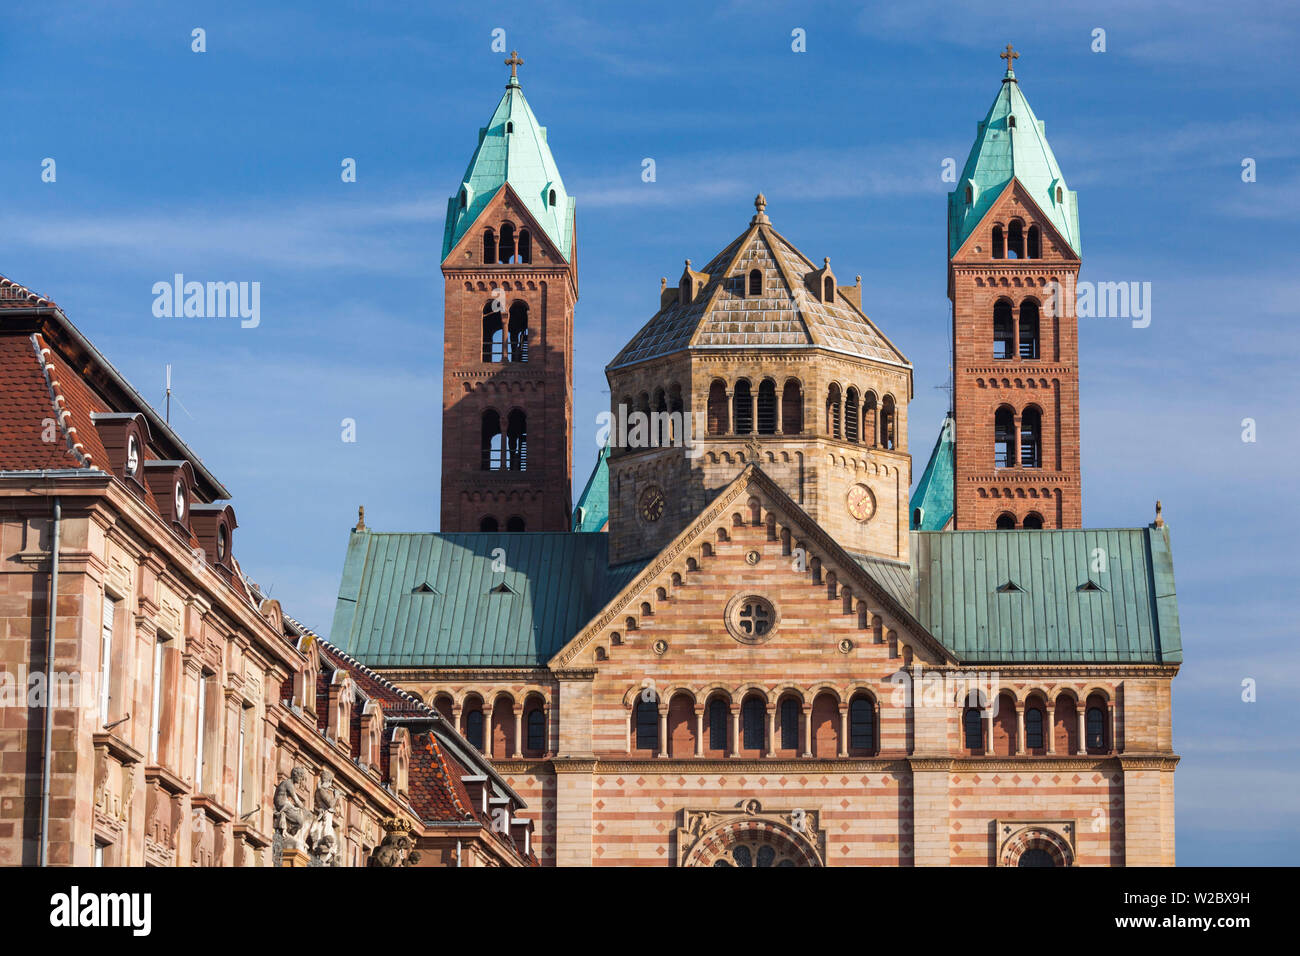 Germany, Rheinland-Pfalz, Speyer, Dom cathedral, exterior Stock Photo